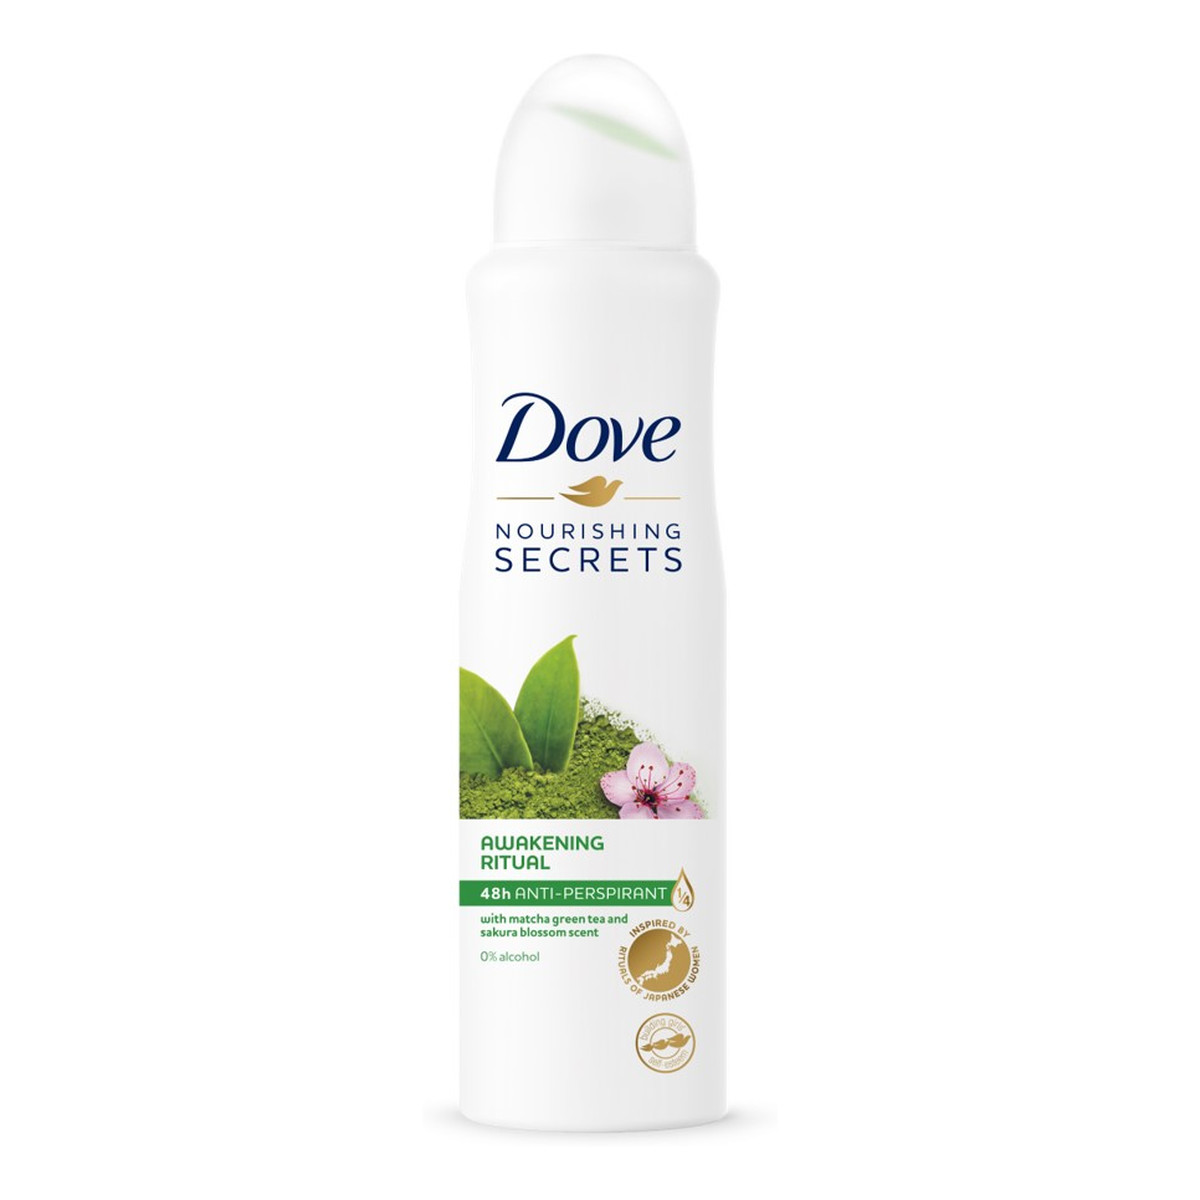 Dove Nourishing Secrets 48H dezodorant Matcha Green Tea & Sakura Blossom Scent 150ml